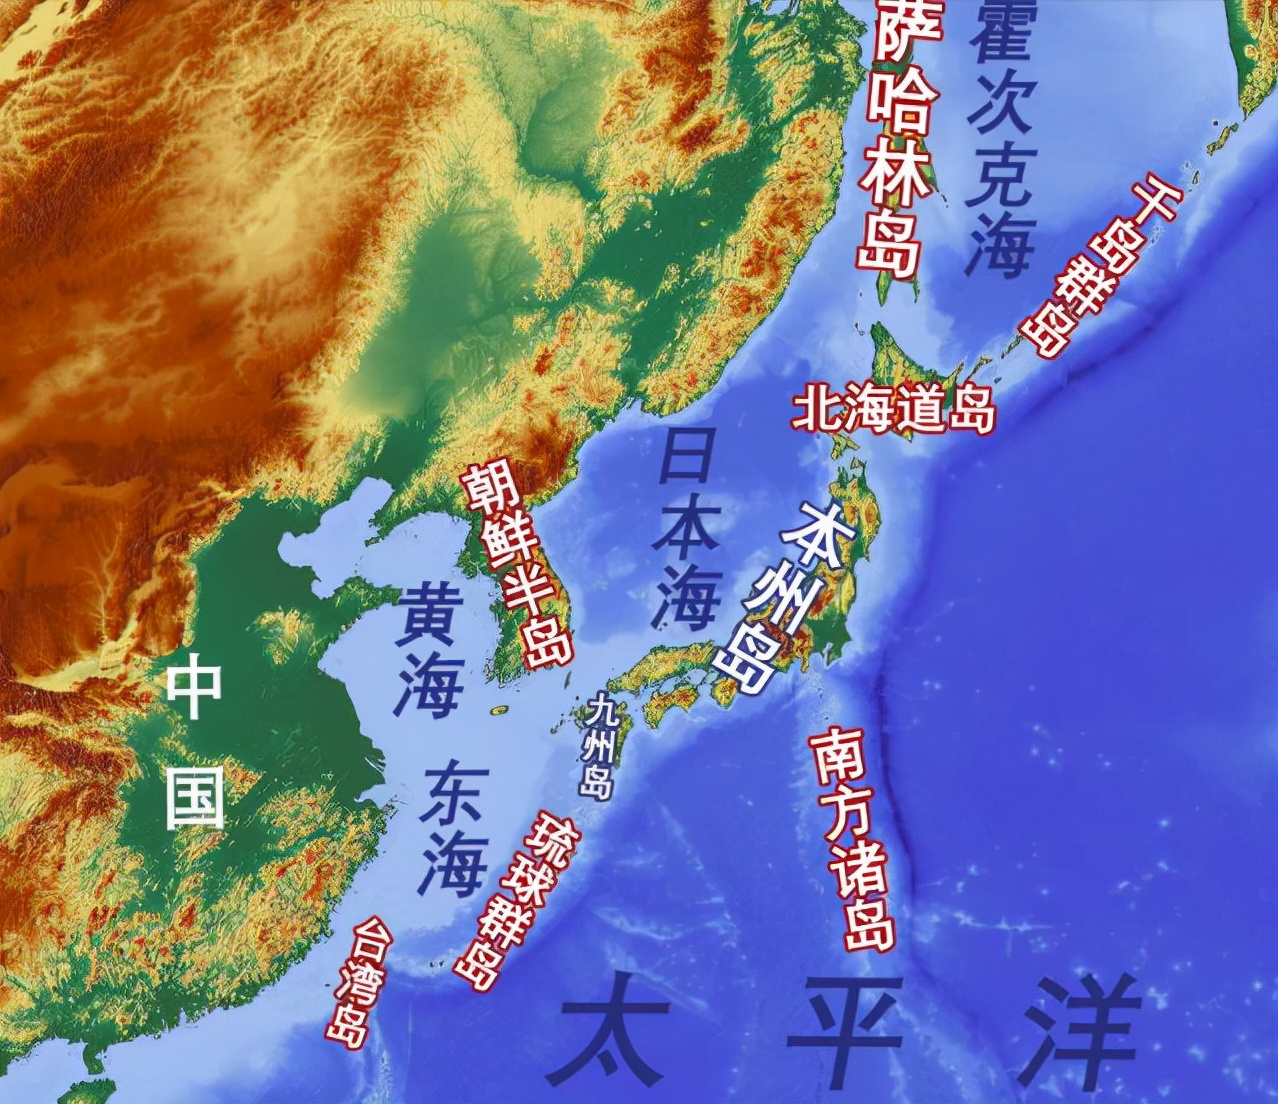 国家的起源，从邪马台国看日本国家的产生和发展——日本简史2